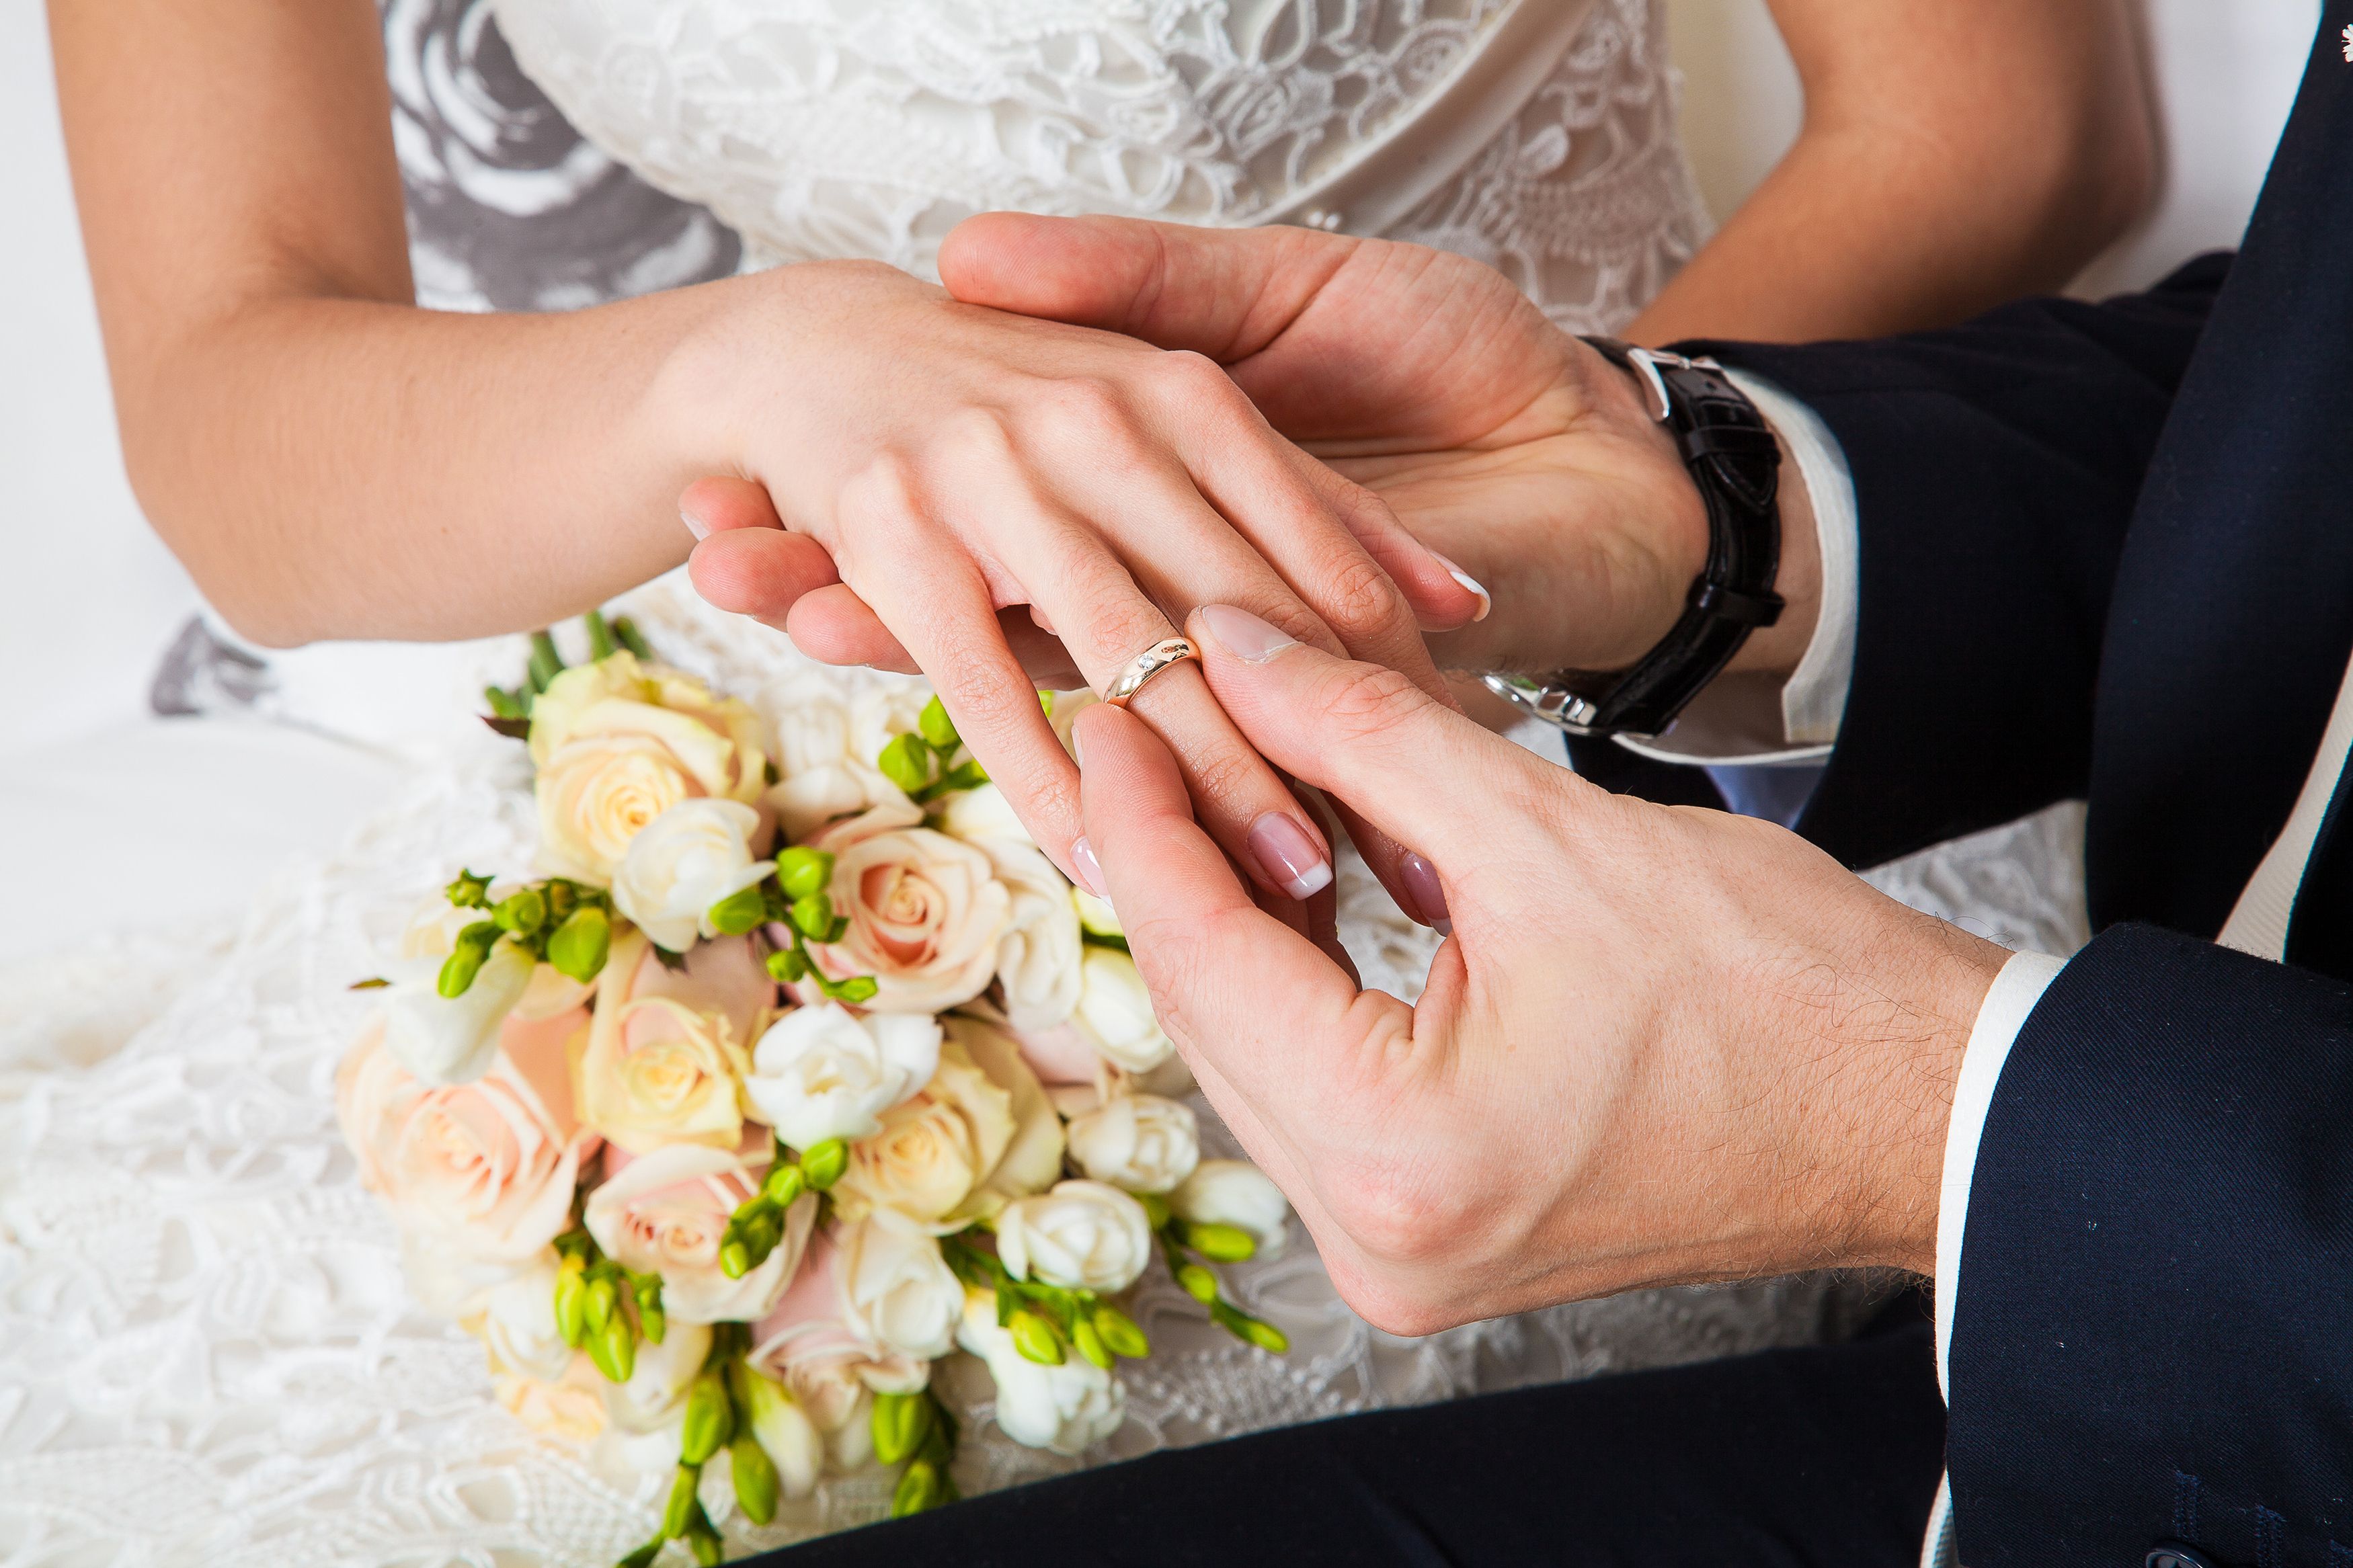 Зарегистрироваться брак. Свадебные кольца на руках. Обручальные кольца жених и невеста. Невеста на руках у жениха. Жених одевает кольцо невесте.